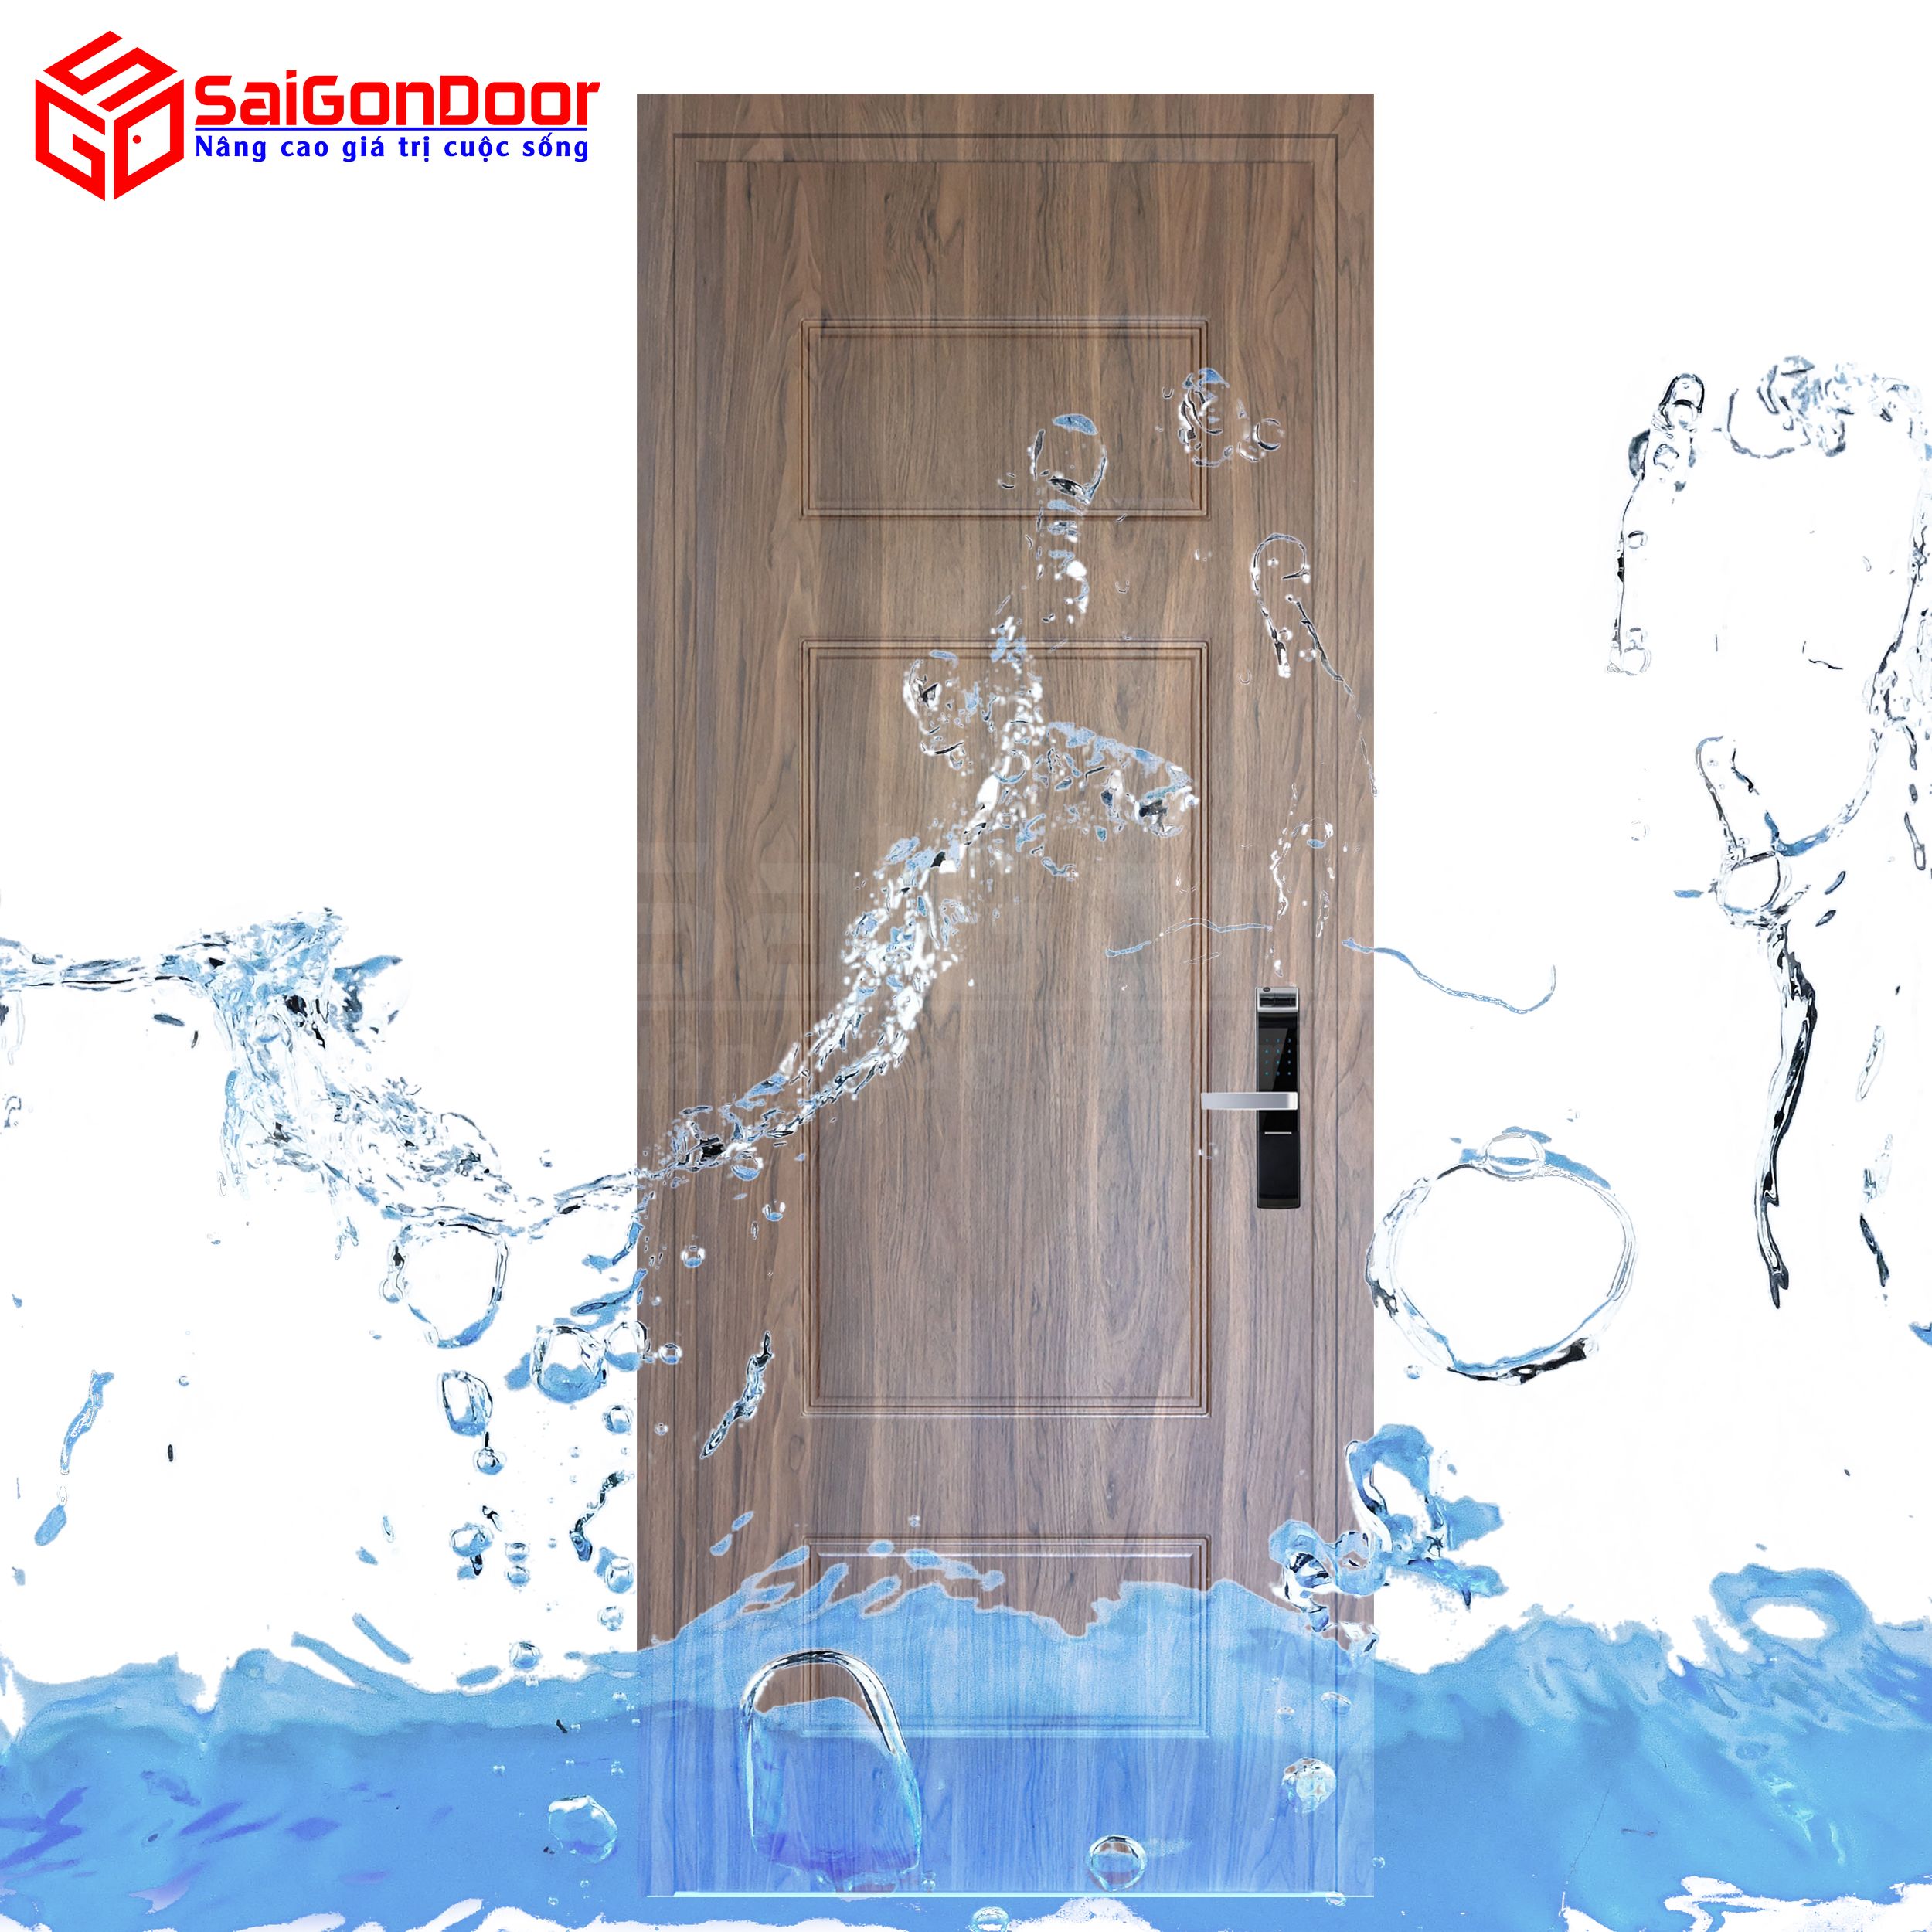 Cửa nhựa gỗ chịu nước, cách âm nên được dùng làm cửa phòng ngủ, văn phòng hay cửa nhà vệ sinh nhà tắm